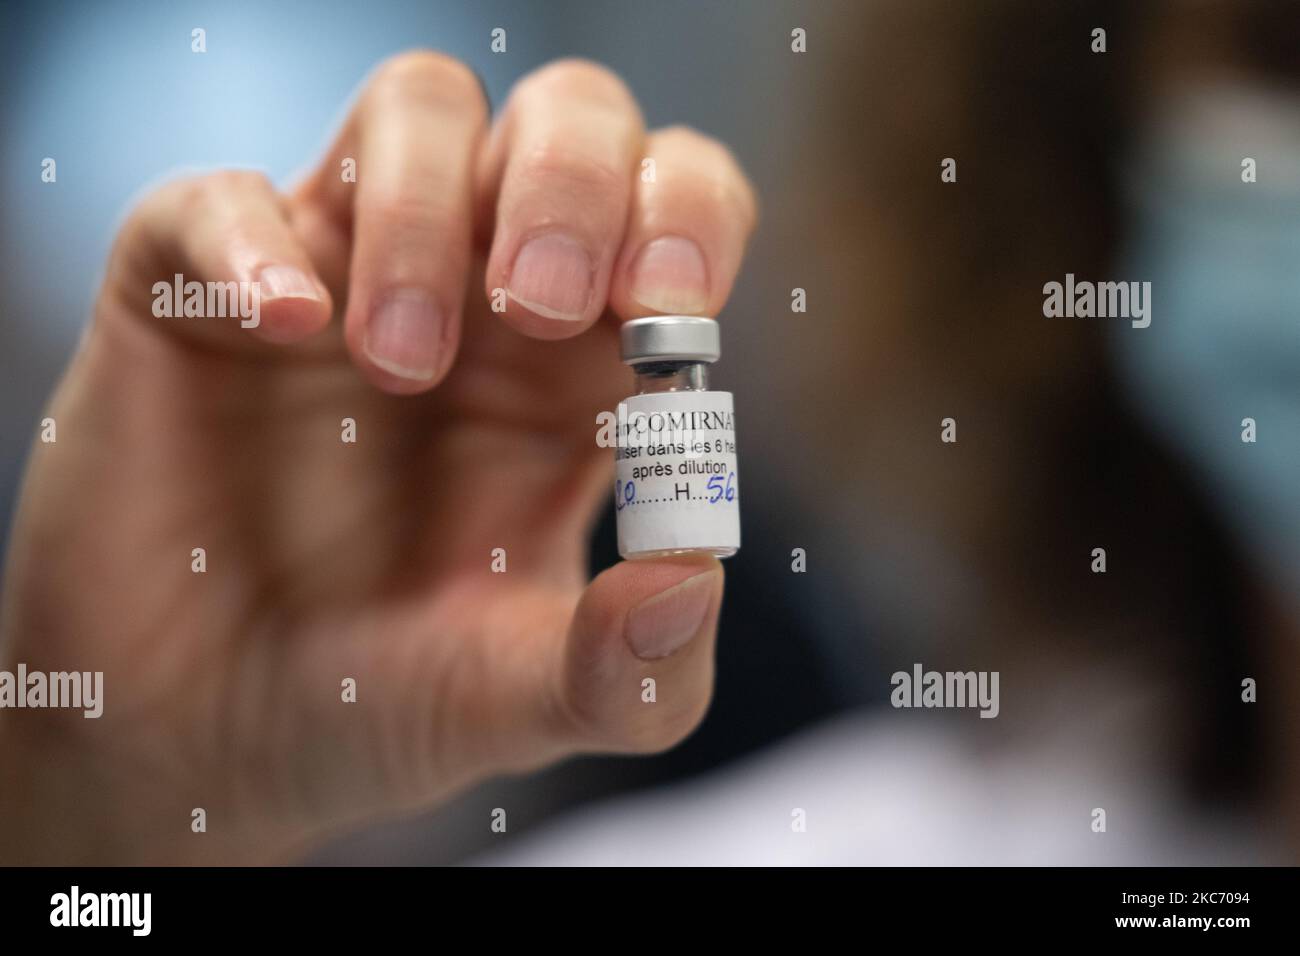 Die erste Impfphase gegen Covid 19 begann am 5. Januar 2021 in Ille-et-Vilaine, Frankreich. Die ersten Injektionen des Pfizer-BioNTech-Boten-RNA-Impfstoffs fanden 5 in der Abteilung in Ephad statt. (Foto von Estelle Ruiz/NurPhoto) Stockfoto